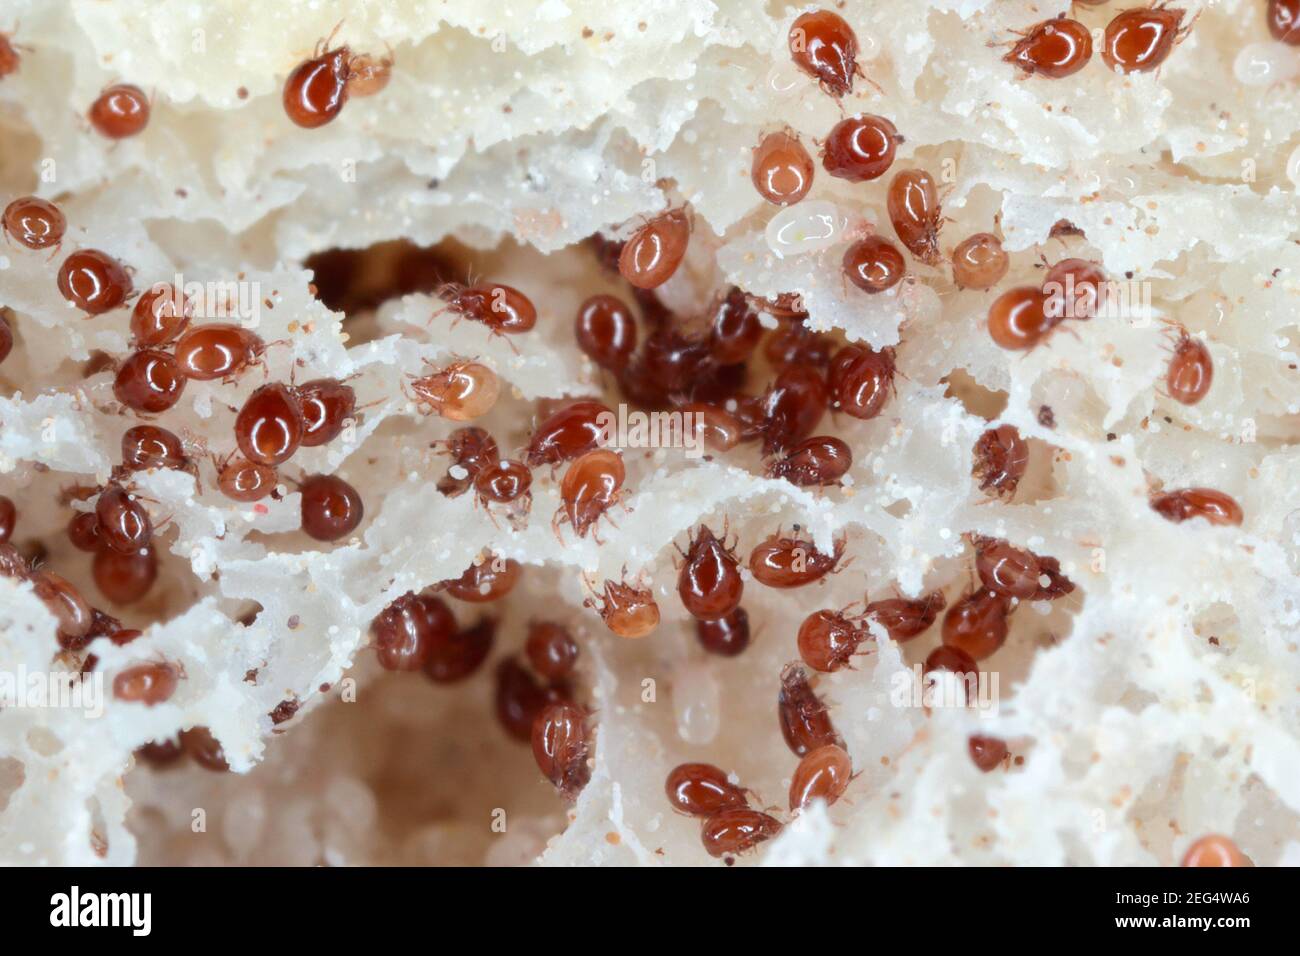 Grossissement des acariens de la famille des acaridae sur du pain moldy. Banque D'Images